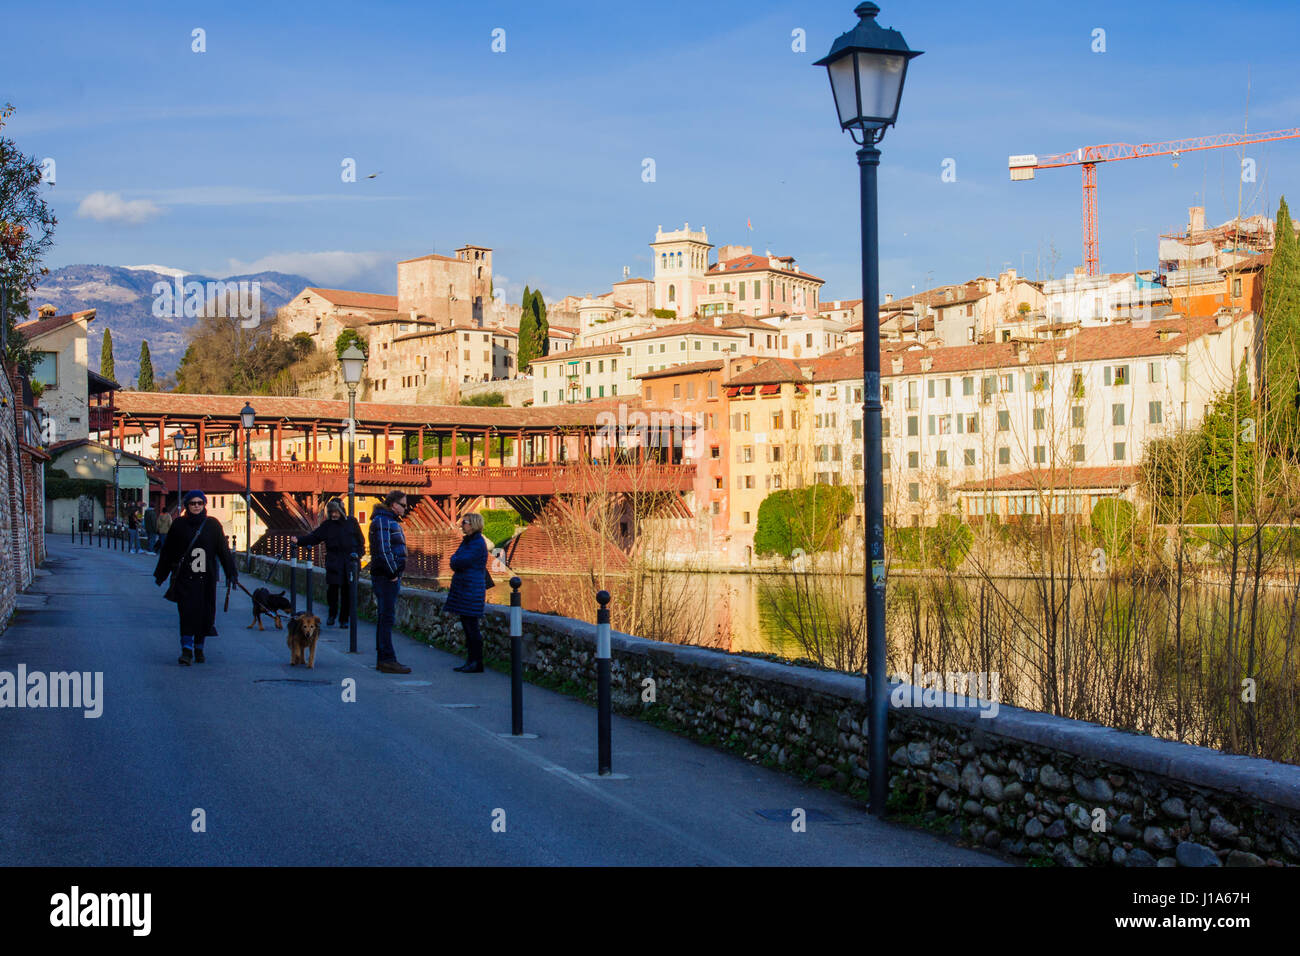 BASSANO DEL GRAPPA, ITALY - JAN 31, 2015: Scene of The Ponte Vecchio (or Ponte degli Alpini) bridge, with local and tourists, and the Brenta river, in Stock Photo